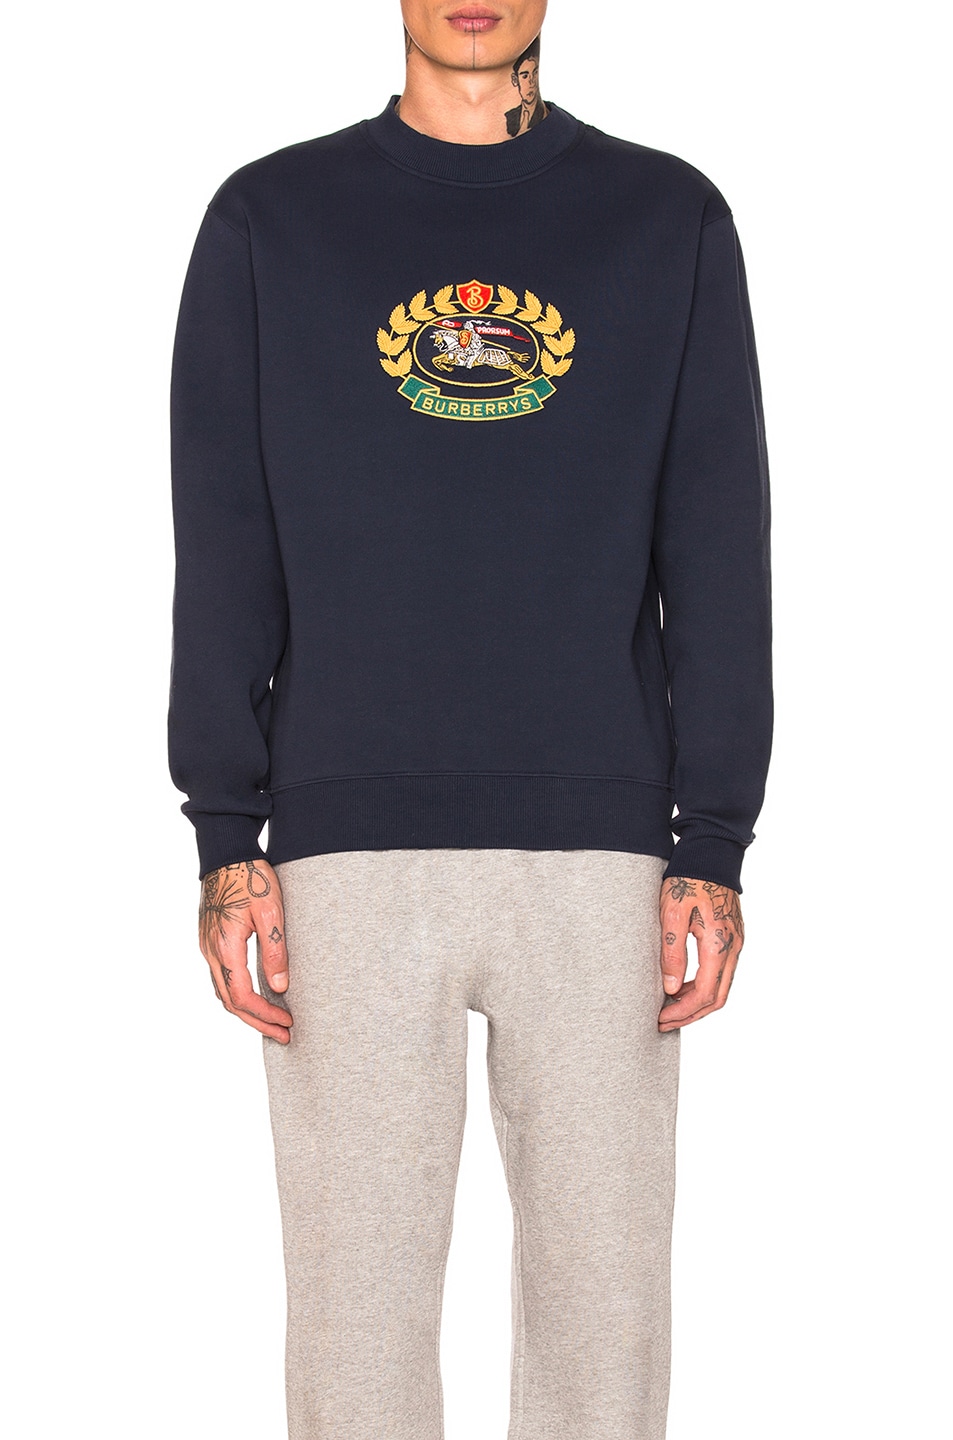 Burberry Pullover Sweatshirt in Navy | FWRD